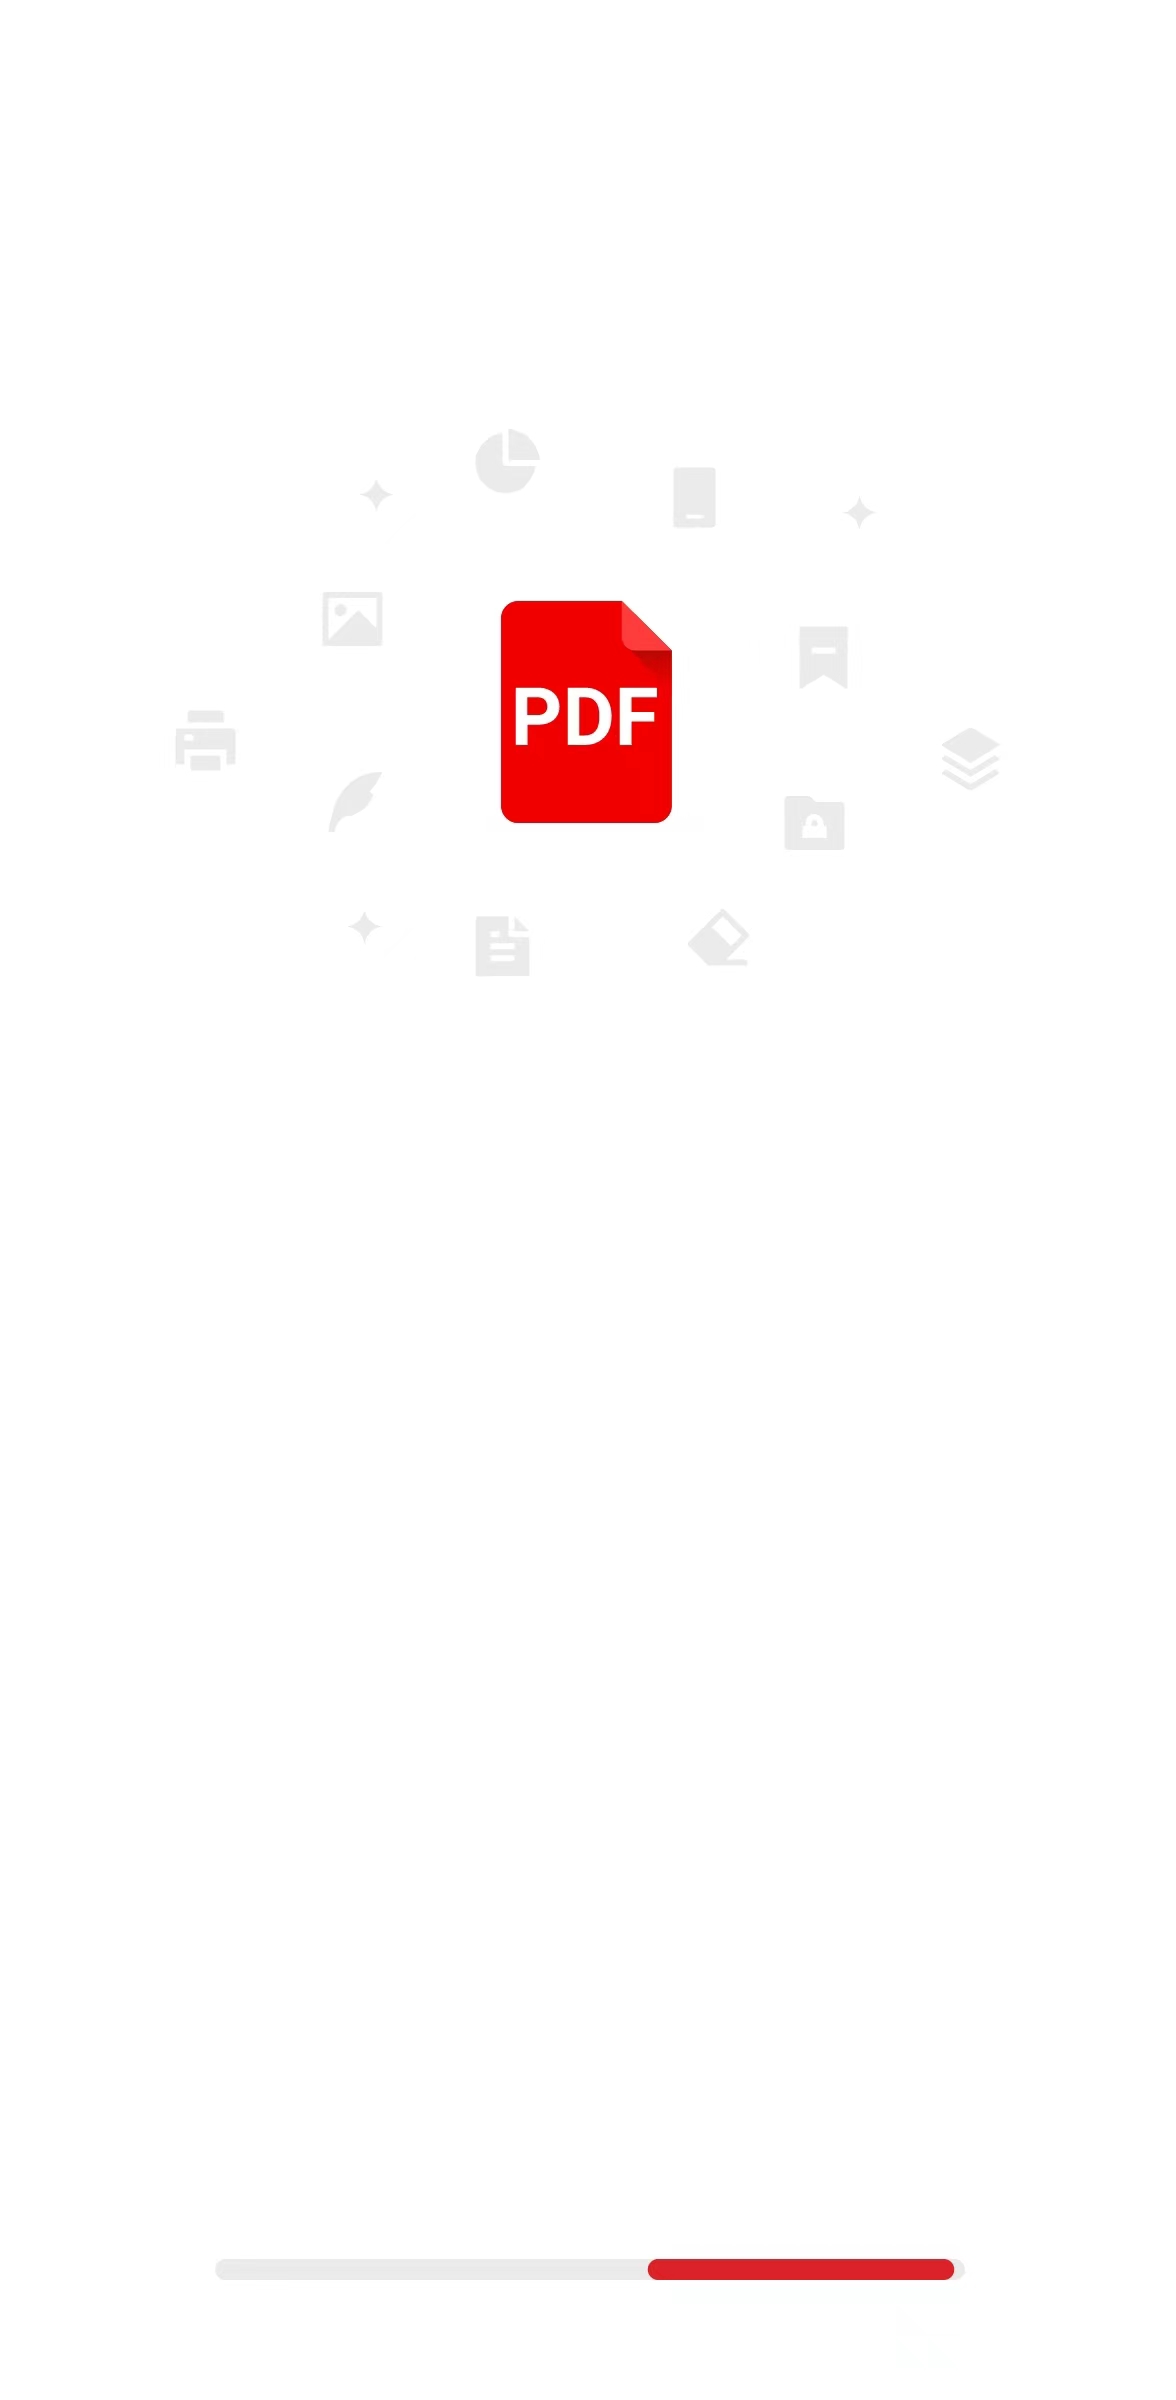 雨齐PDF阅读器软件最新版图片1